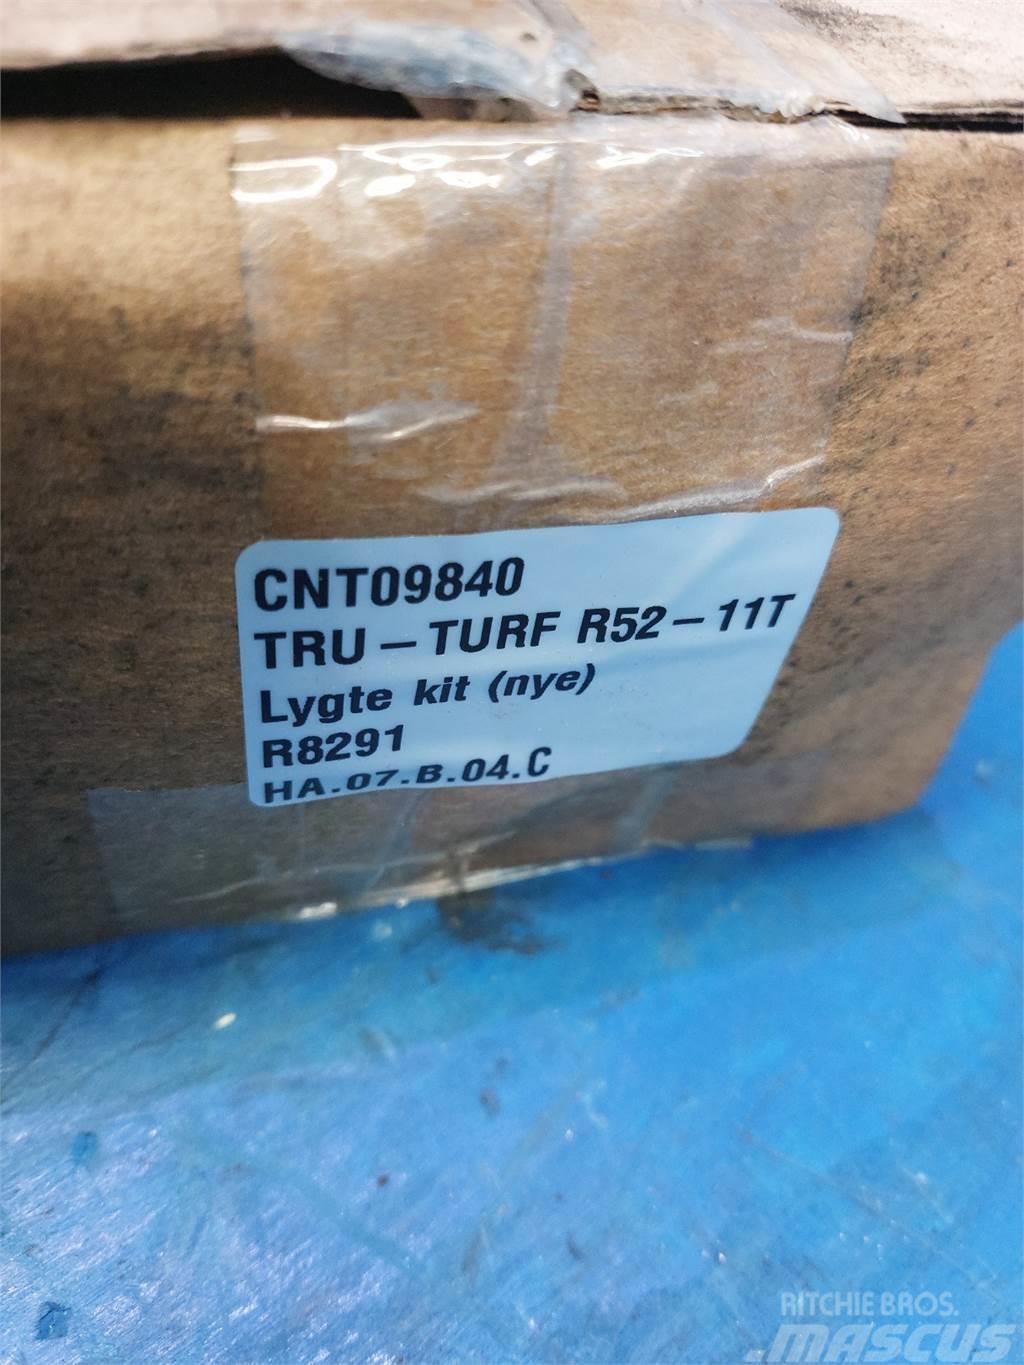  Tru-Turf R52 Otros equipamientos de construcción